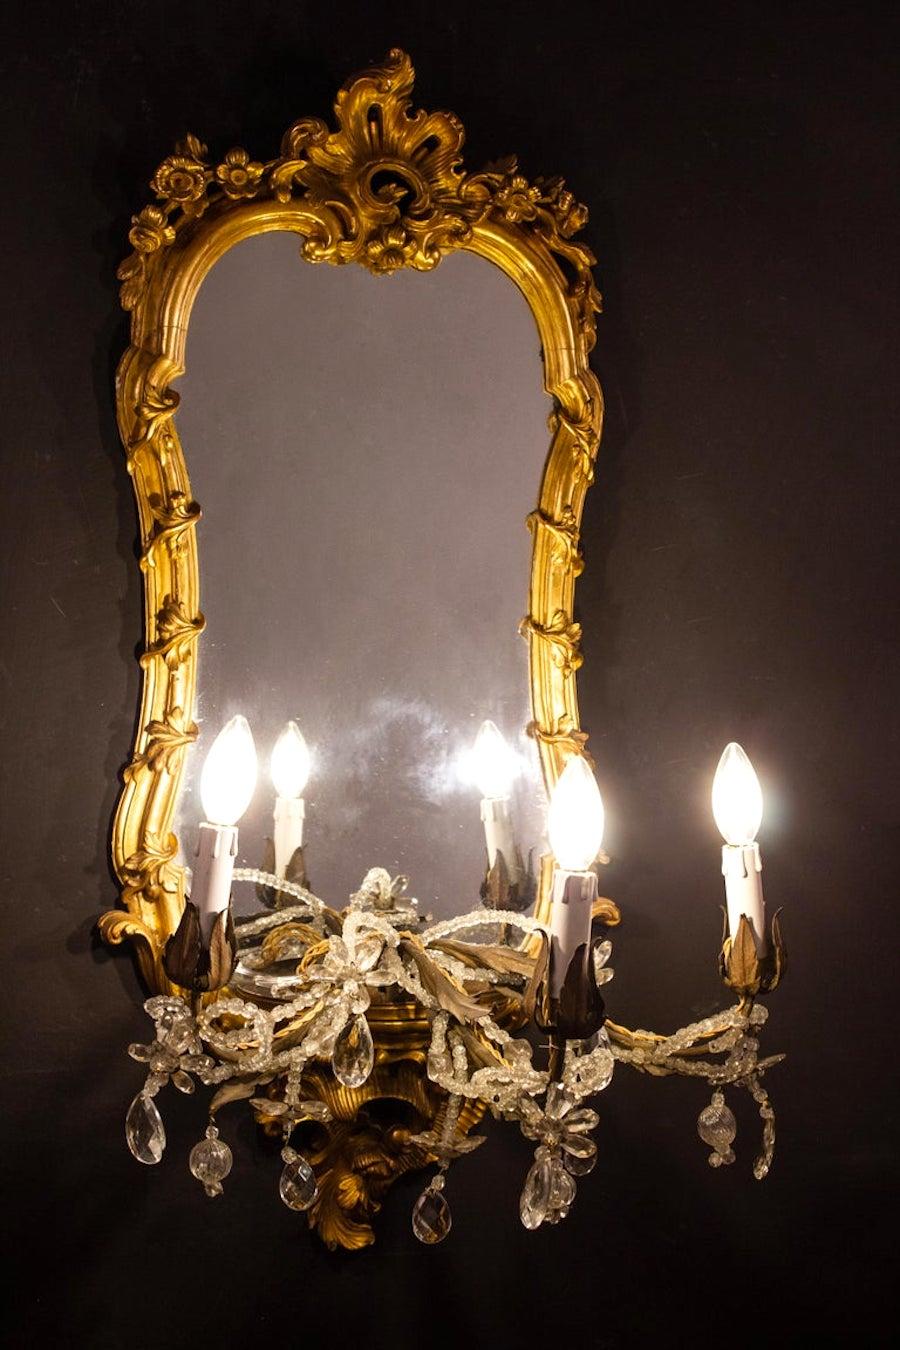 Merveilleuse paire de miroirs en bois doré et finement sculpté du 18ème siècle avec trois bras de bougie, Rome, 1750.
Les bras de la bougie peuvent également être retirés et utilisés comme base pour un vase ou une sculpture en porcelaine.
Dorure